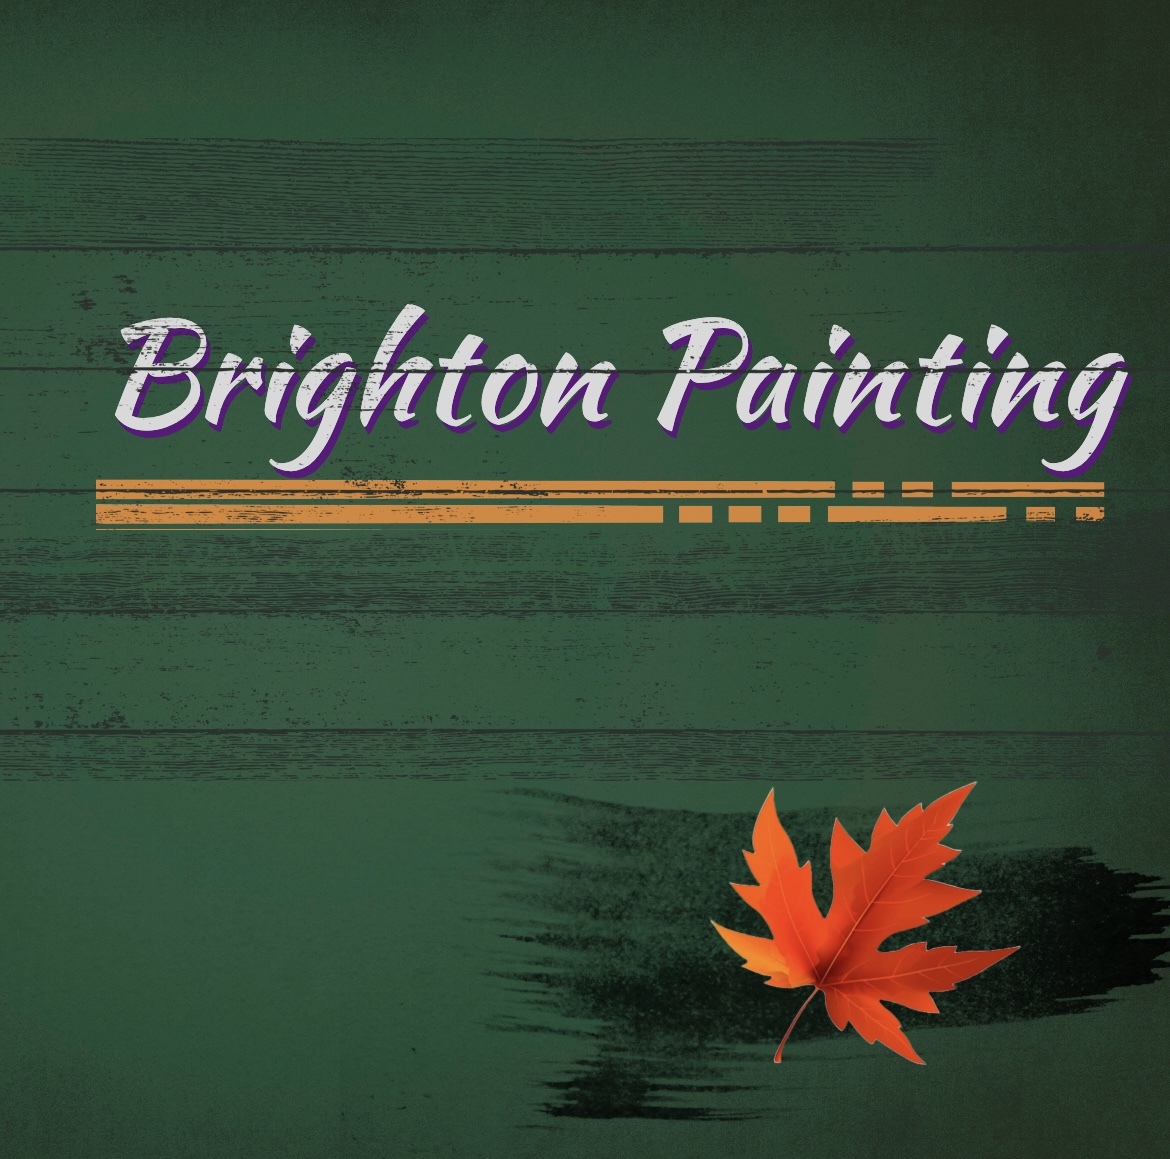 Brighton Painting 's logo